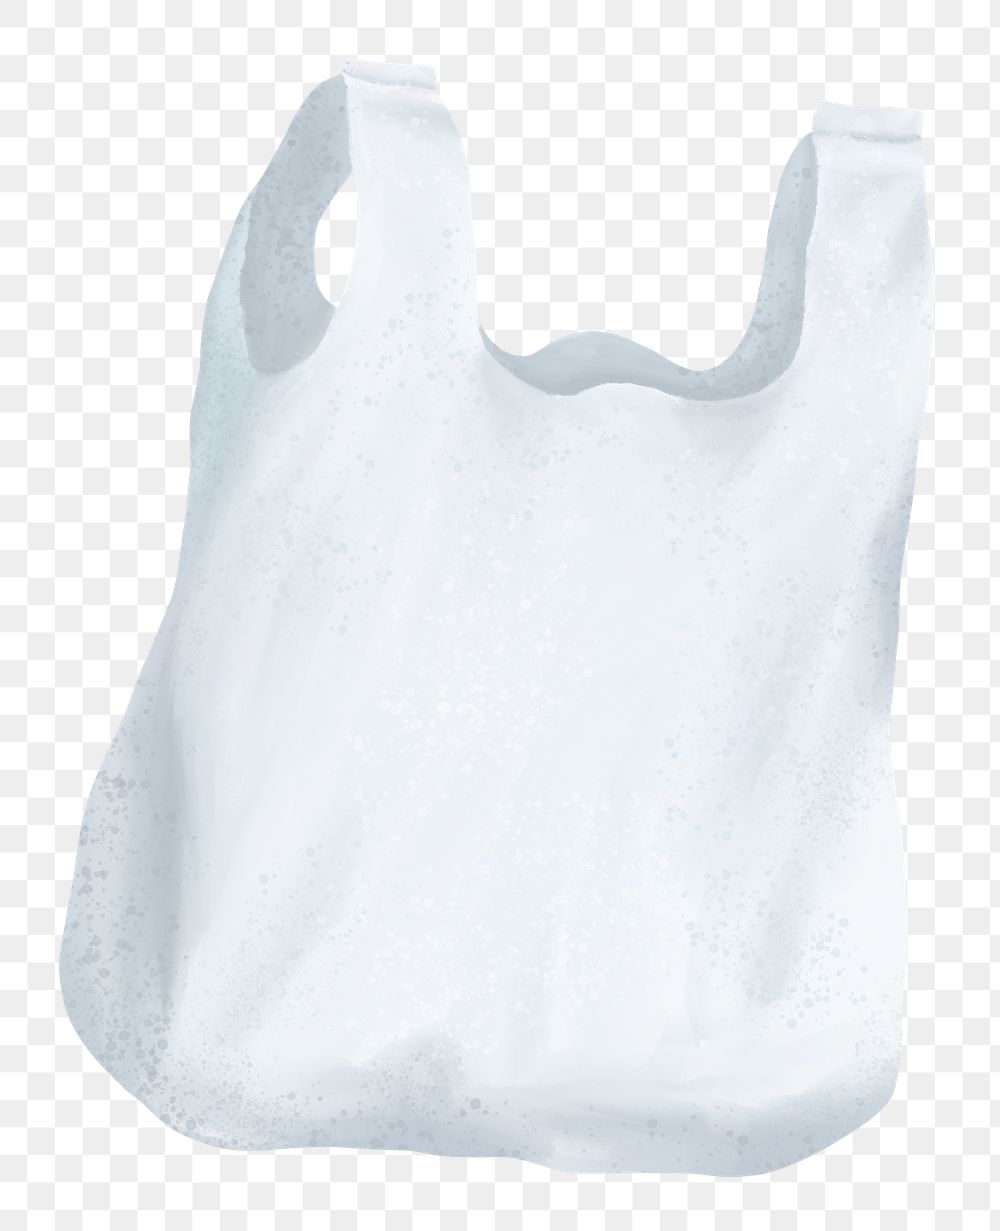 Plastic bag png sticker, trash pollution illustration, transparent background